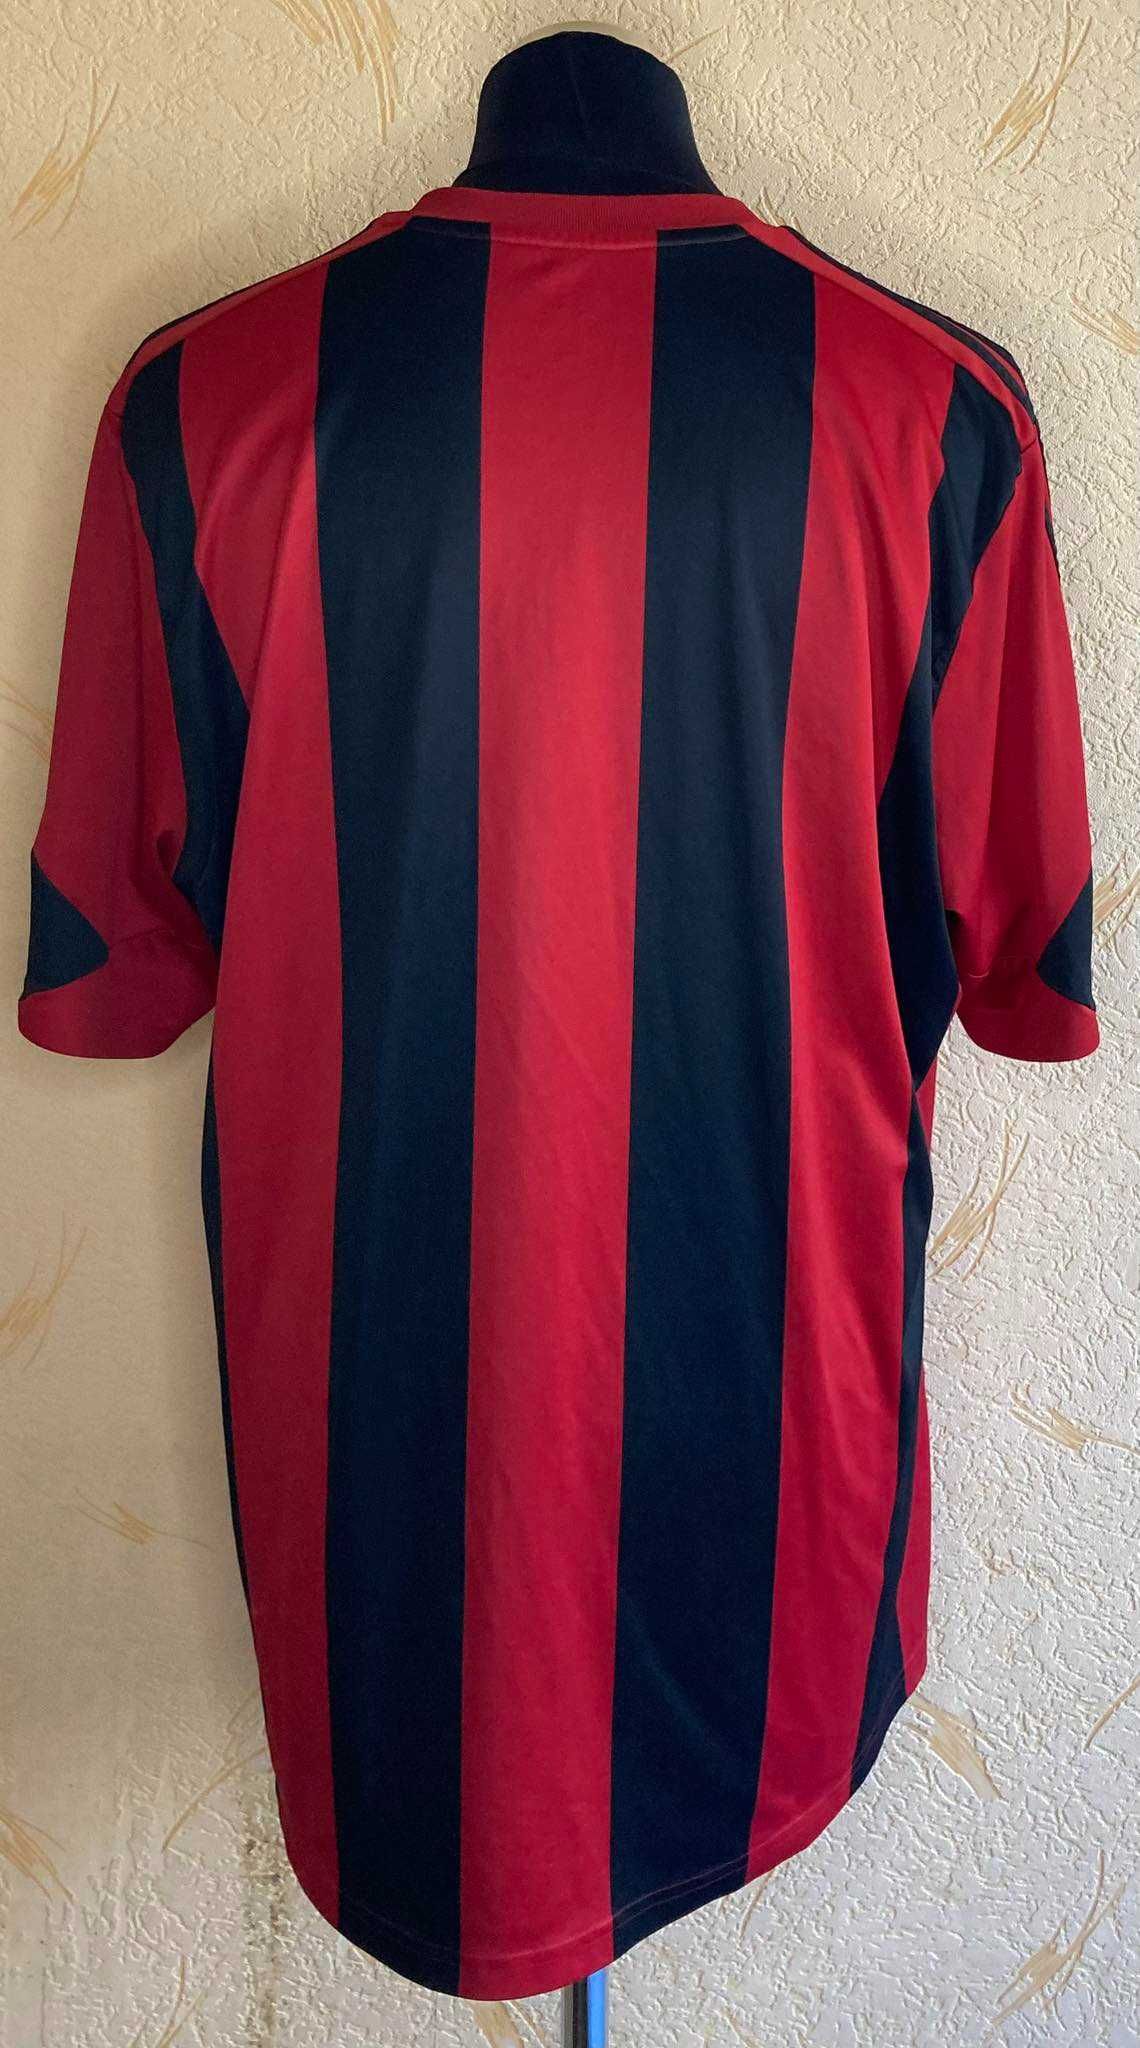 Koszulka Piłkarska West Bromwich Albion Adidas Roz. 2XL